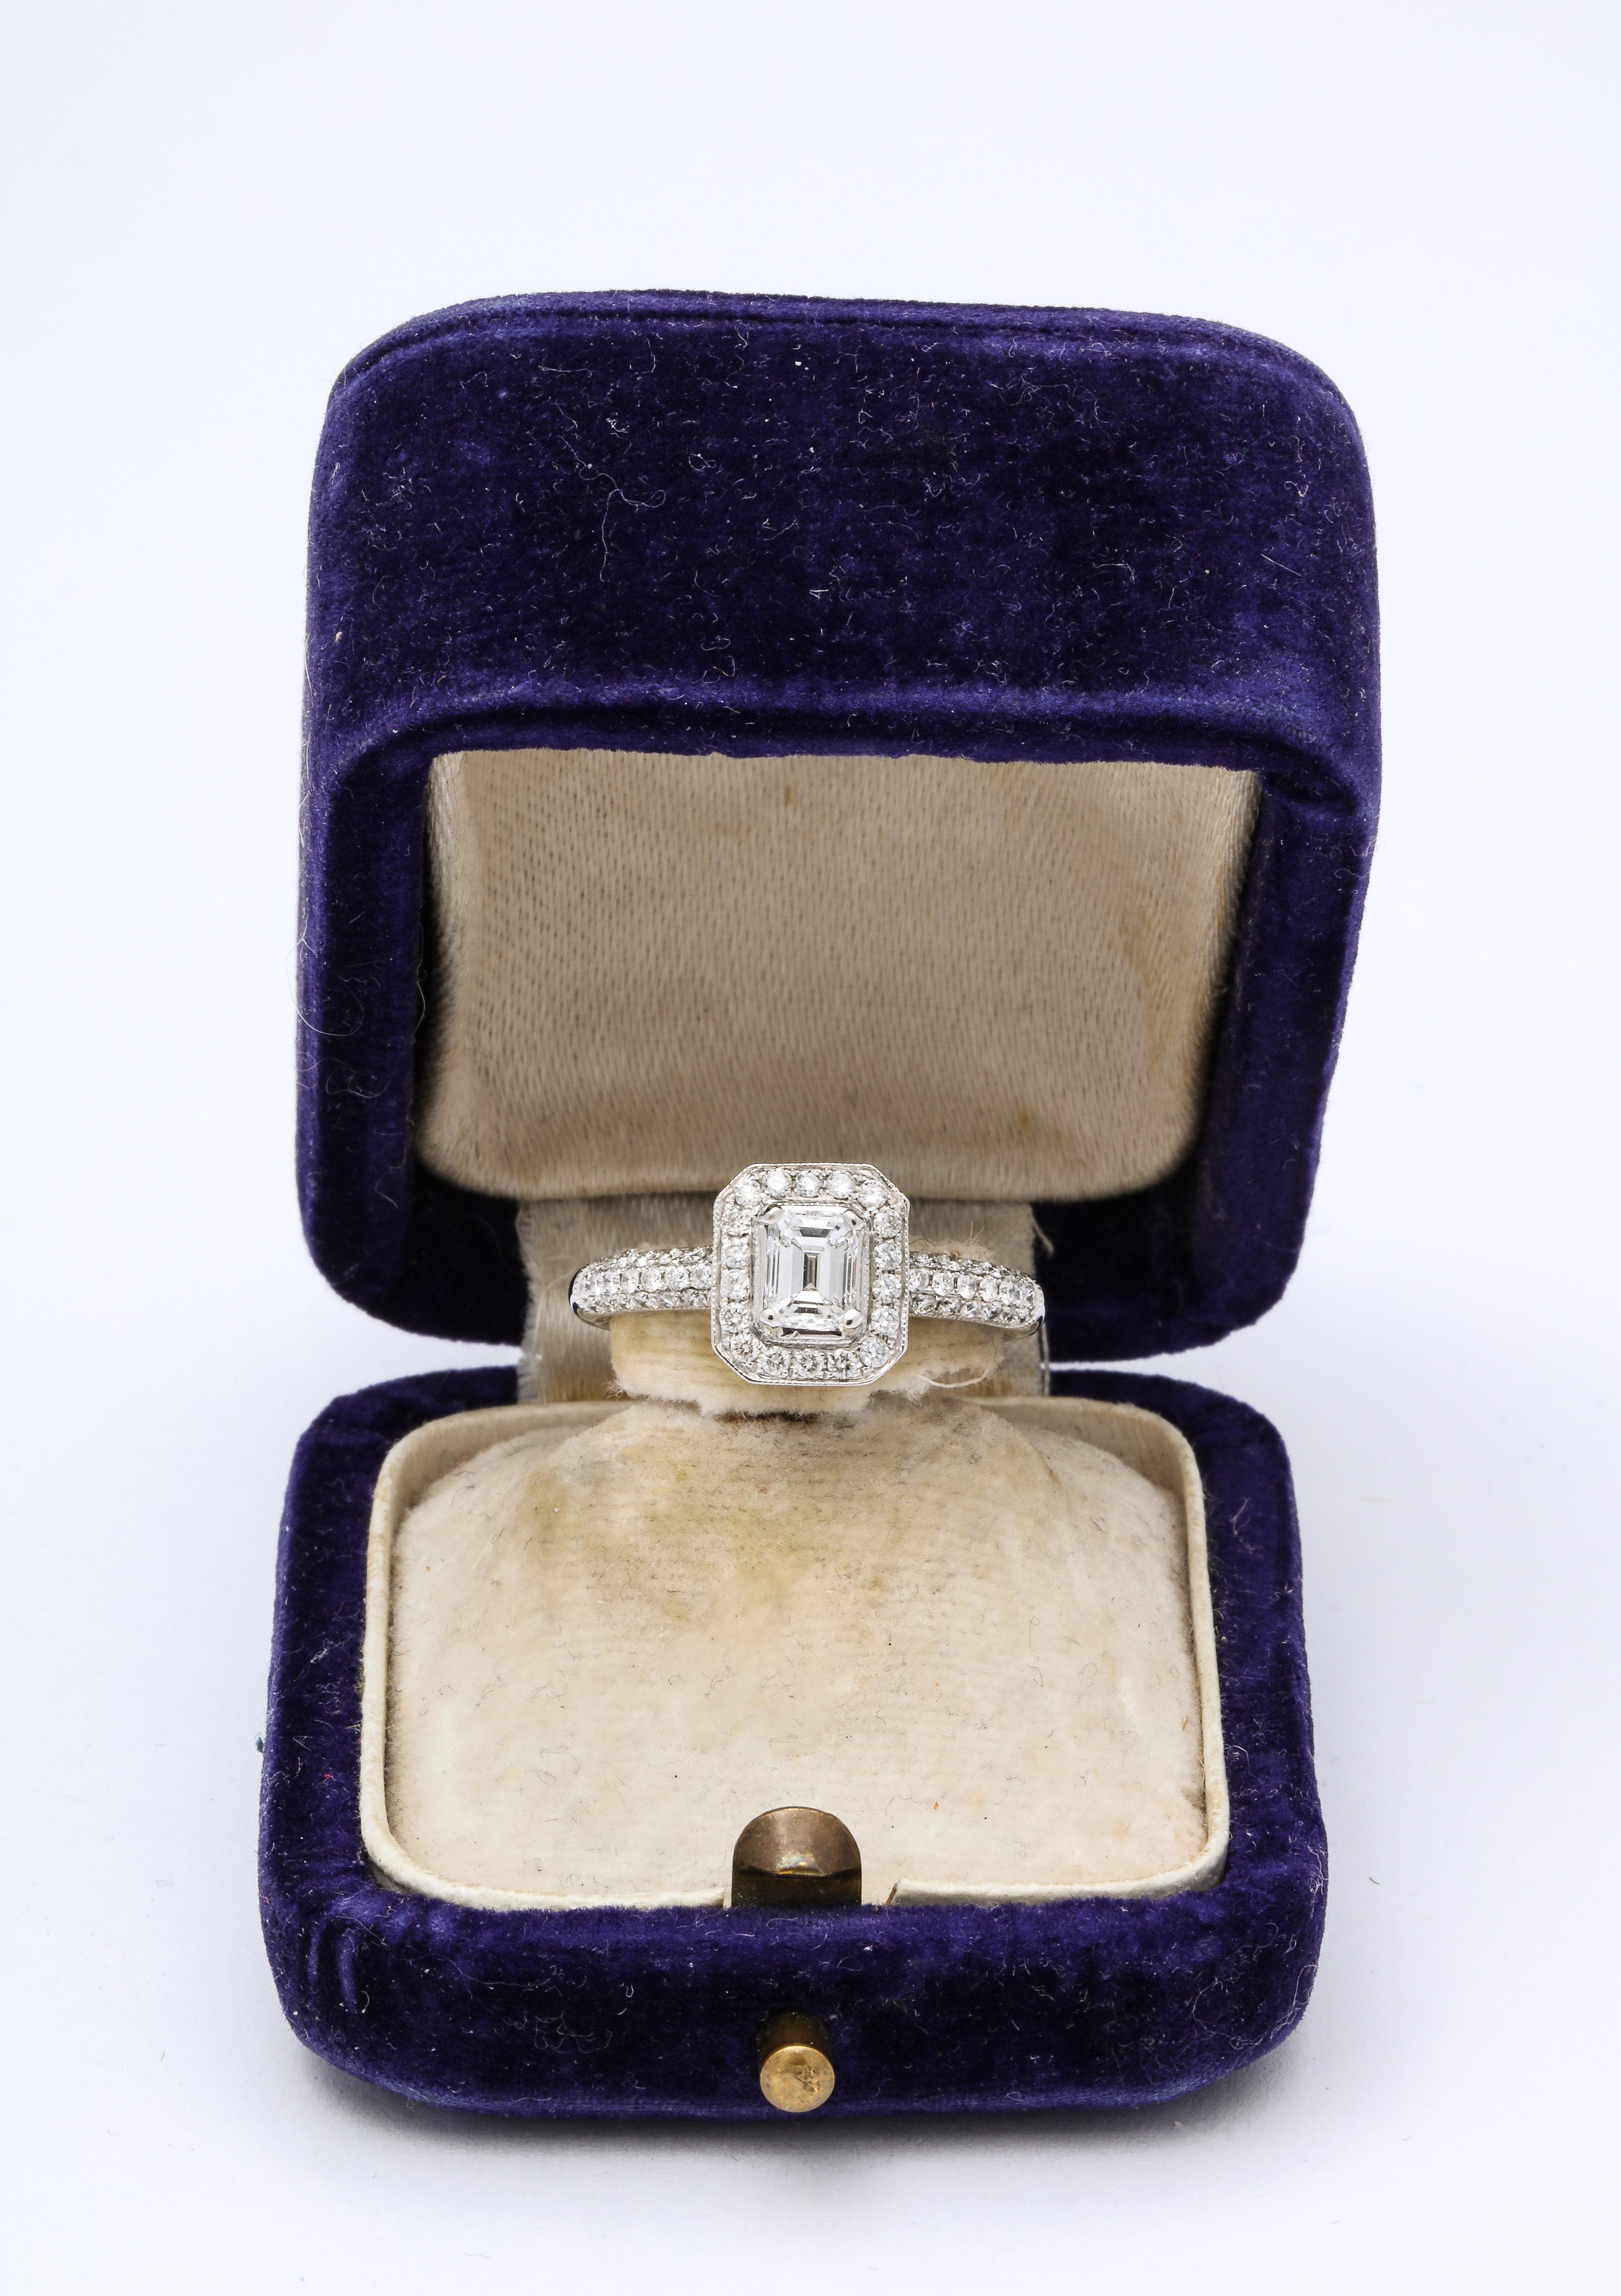 Verlobungsring mit Smaragdschliff und 18k Weißgold. Ein glänzender VS I Diamant-Verlobungsring. Ein zentraler Diamant im Smaragdschliff (0,50) wird von einer Gruppe kleinerer Diamanten umrahmt, die in eine Weißgoldfassung eingesetzt sind.